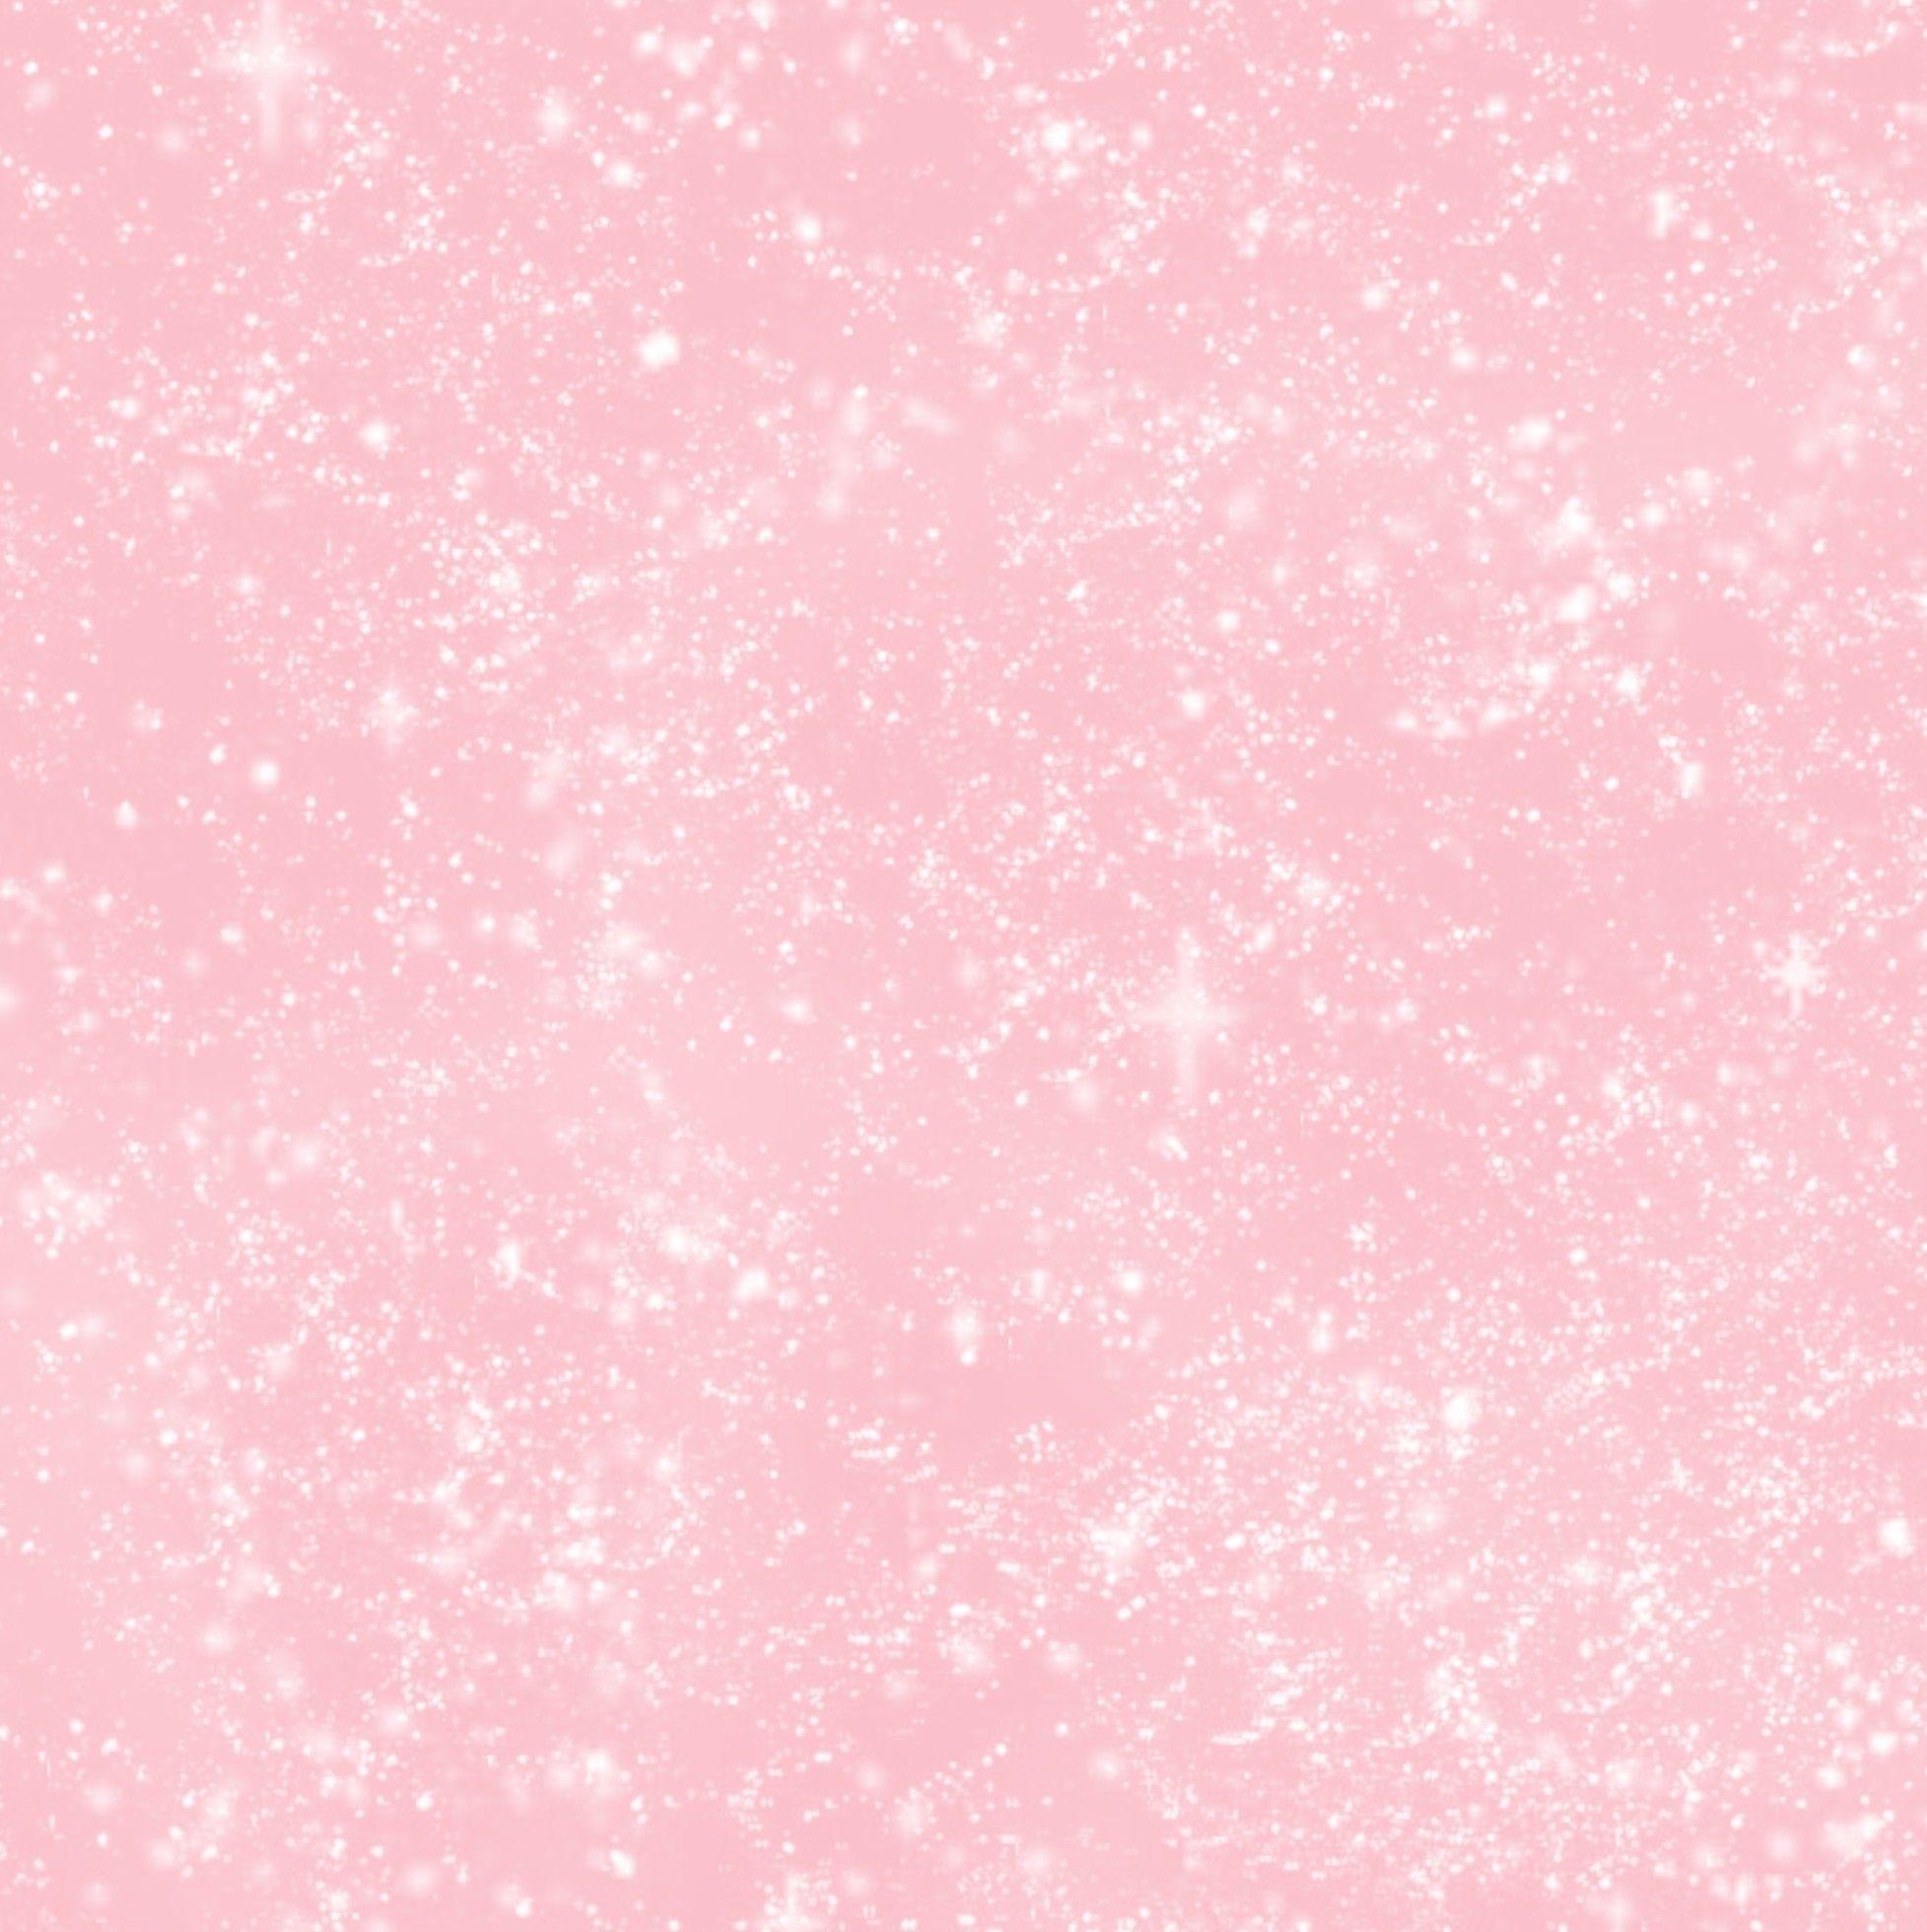 Hình nền hồng nhạt tươi tắn được thiết kế tinh tế để tạo nên một không gian thư giãn và ngọt ngào. Hãy thưởng thức bức ảnh này và cảm nhận cảm giác thật tuyệt vời mà hình nền pink nhạt mang lại.